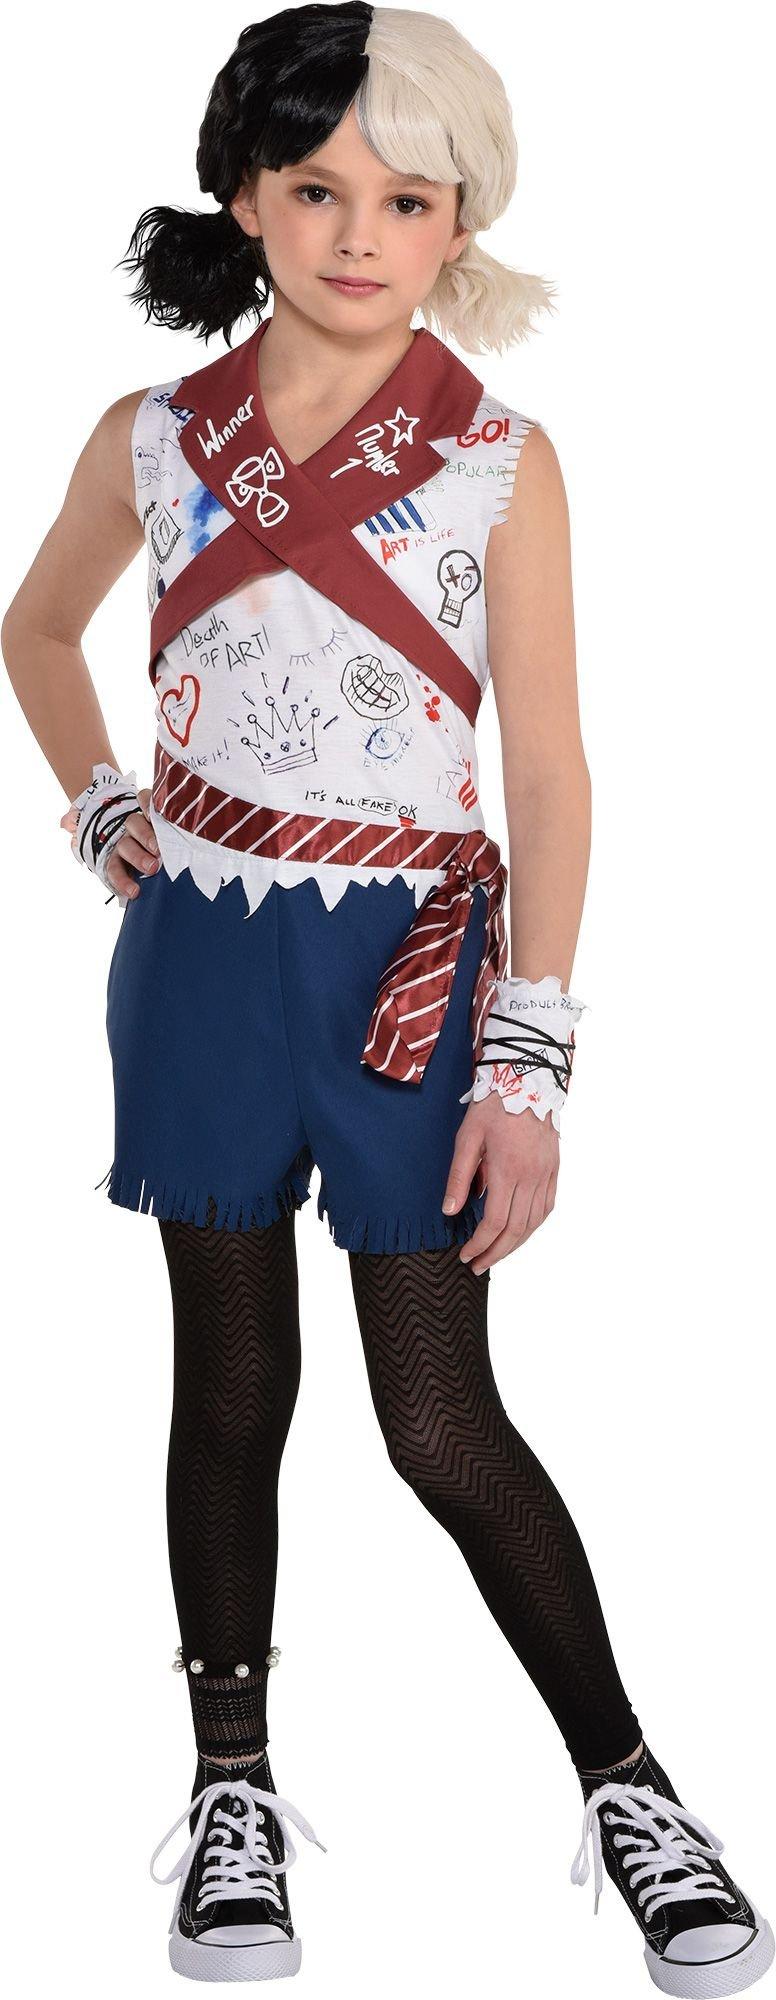 Estella School Uniform Costume Accessory Kit for Kids - Disney Cruella